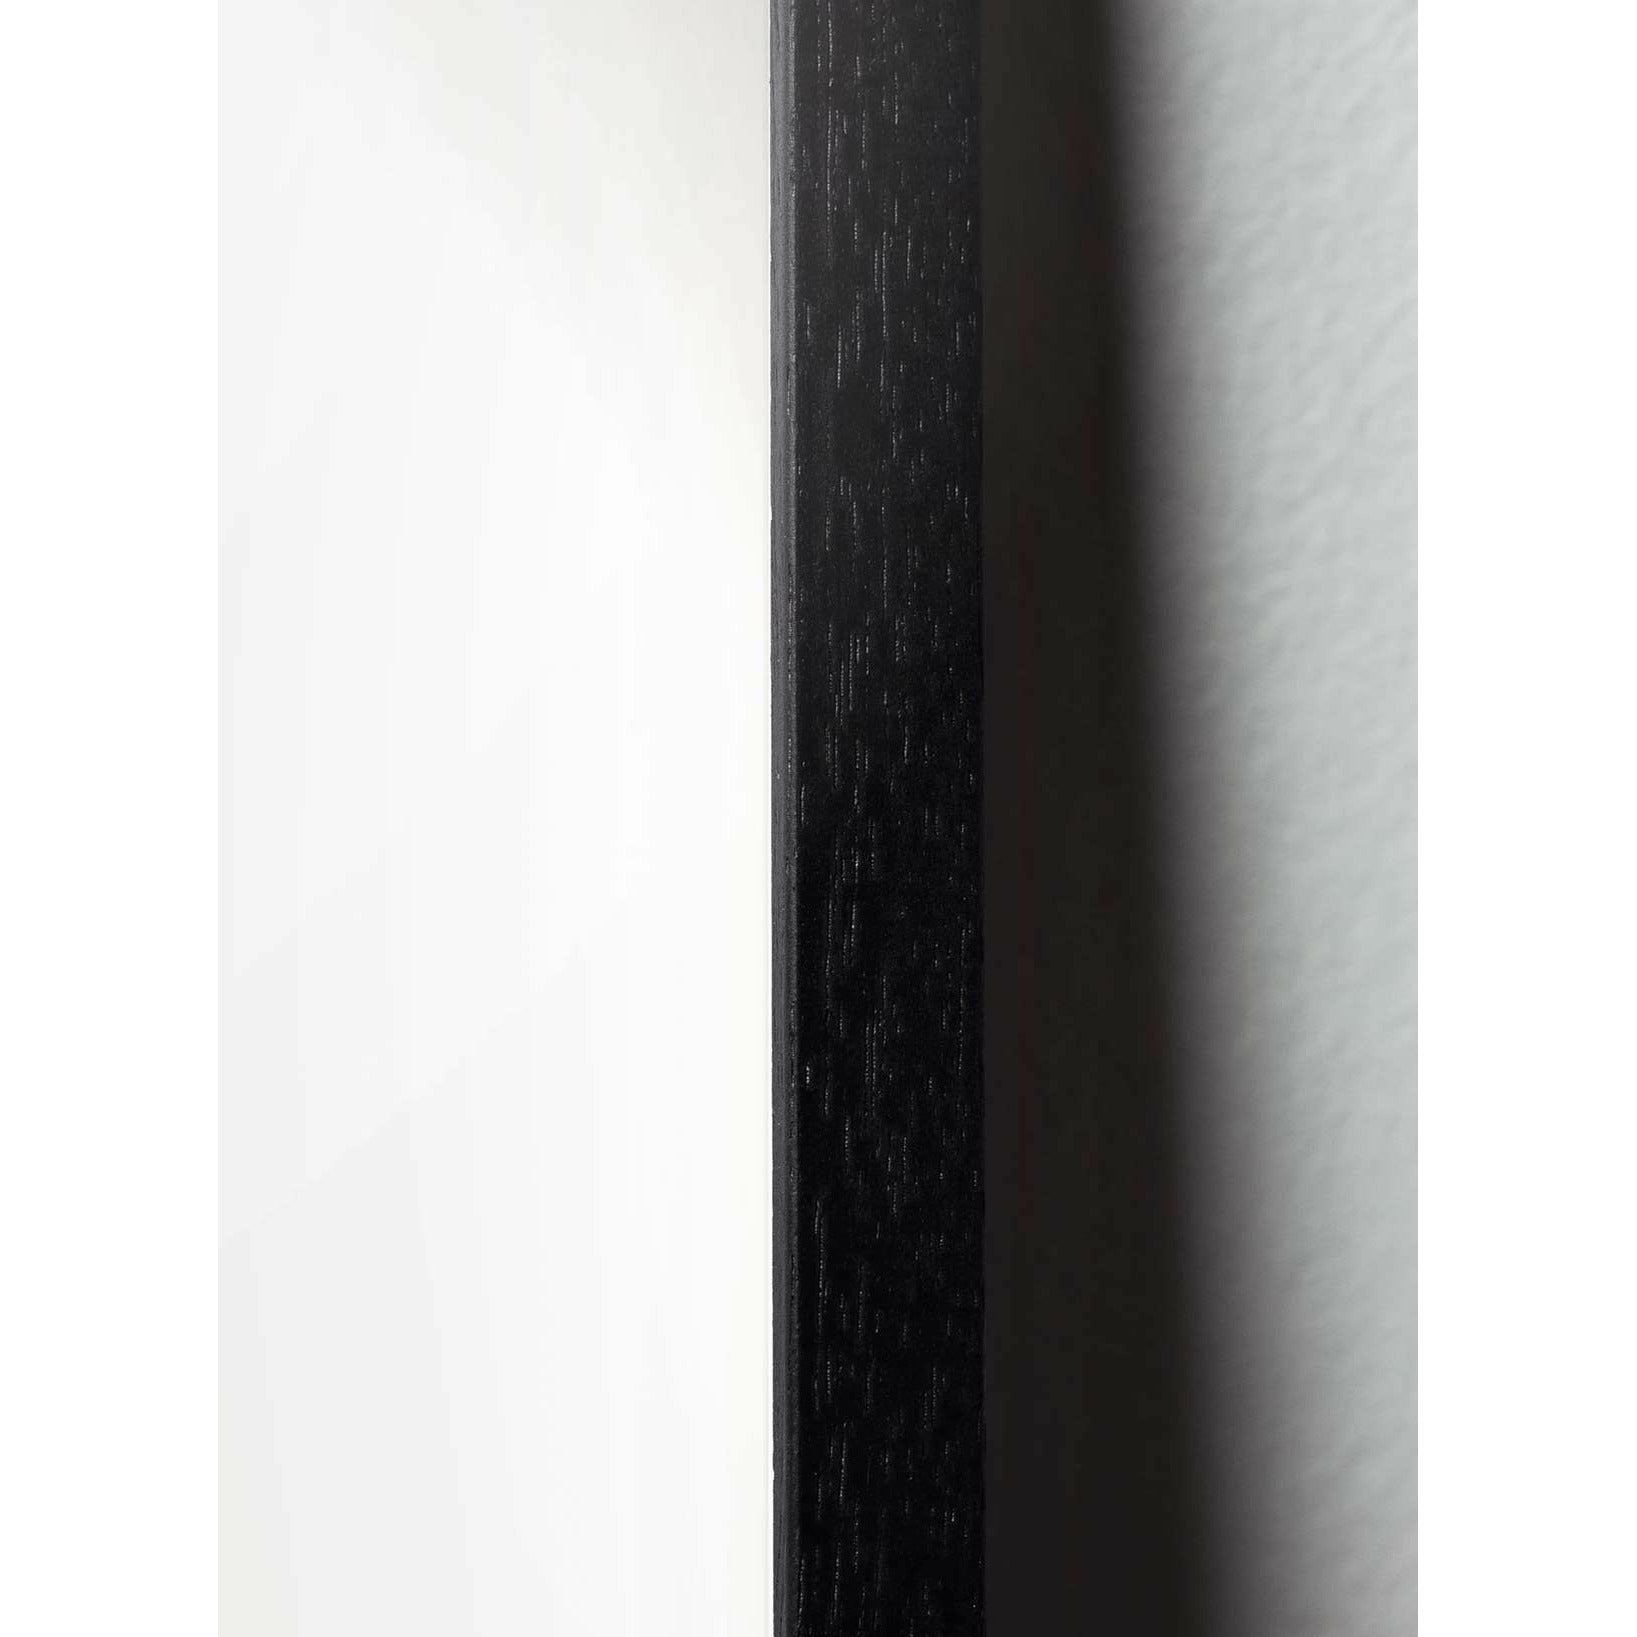 Póster clásico de Brailild Teddy Bear, marco hecho de madera lacada negra de 50x70 cm, fondo de color arena